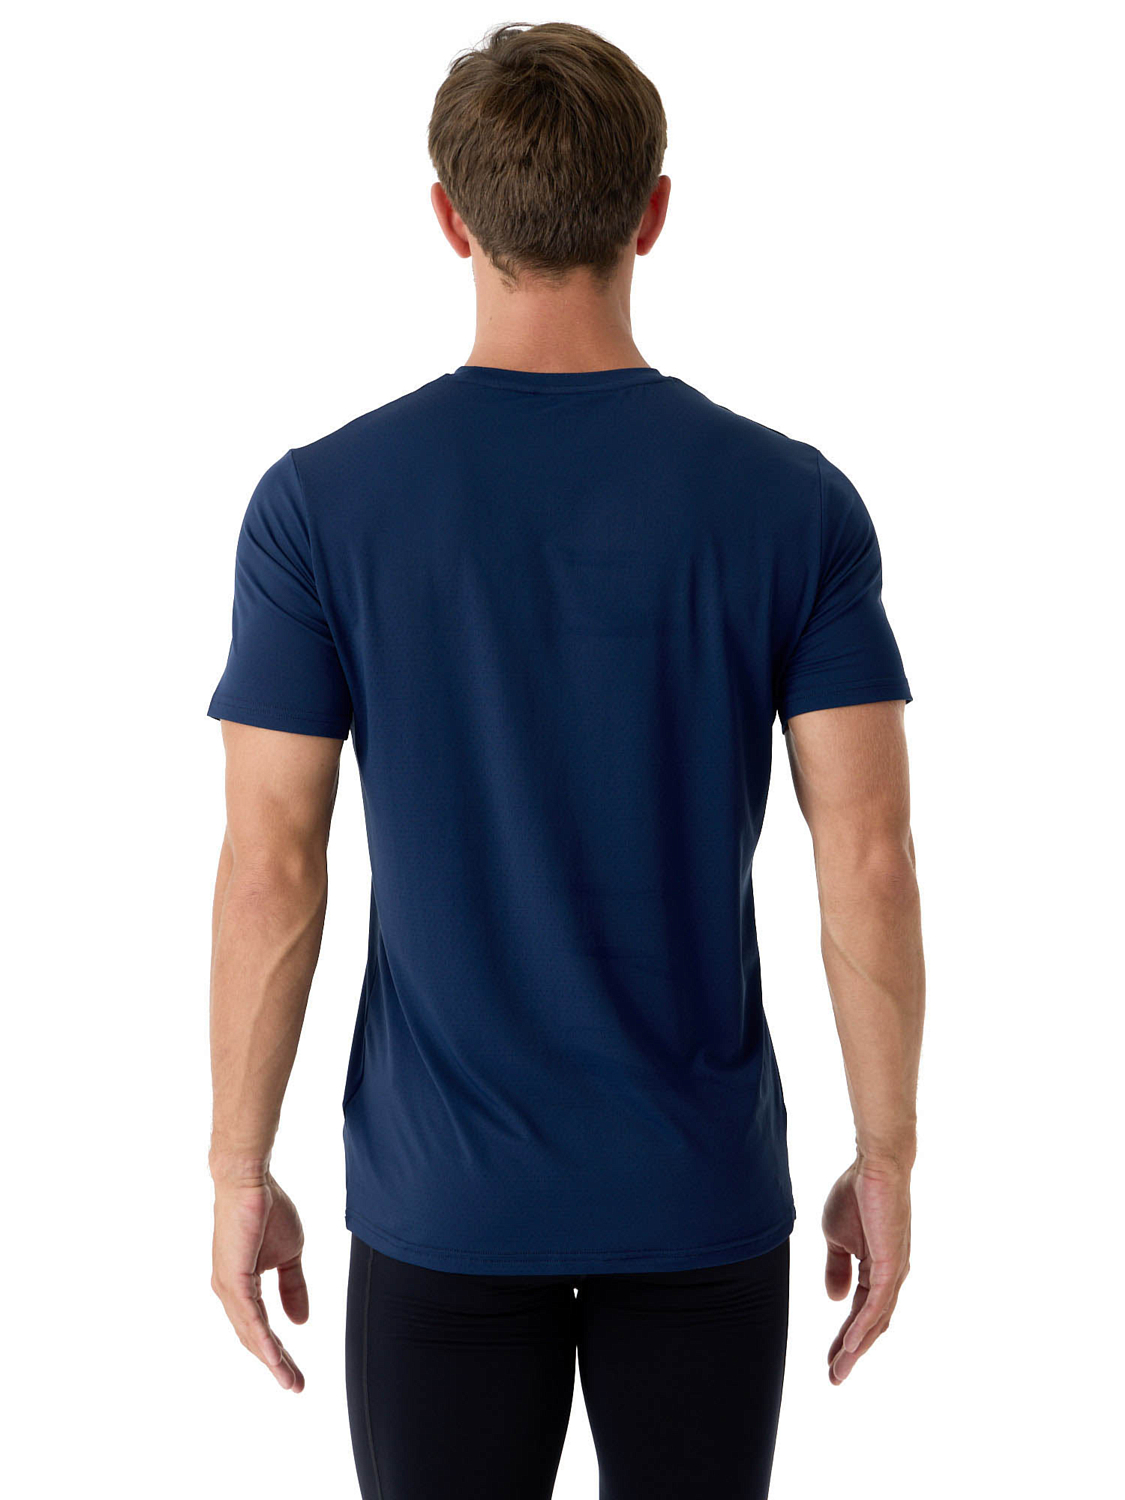 Футболка беговая Bjorn Daehlie T-Shirt Focus Navy